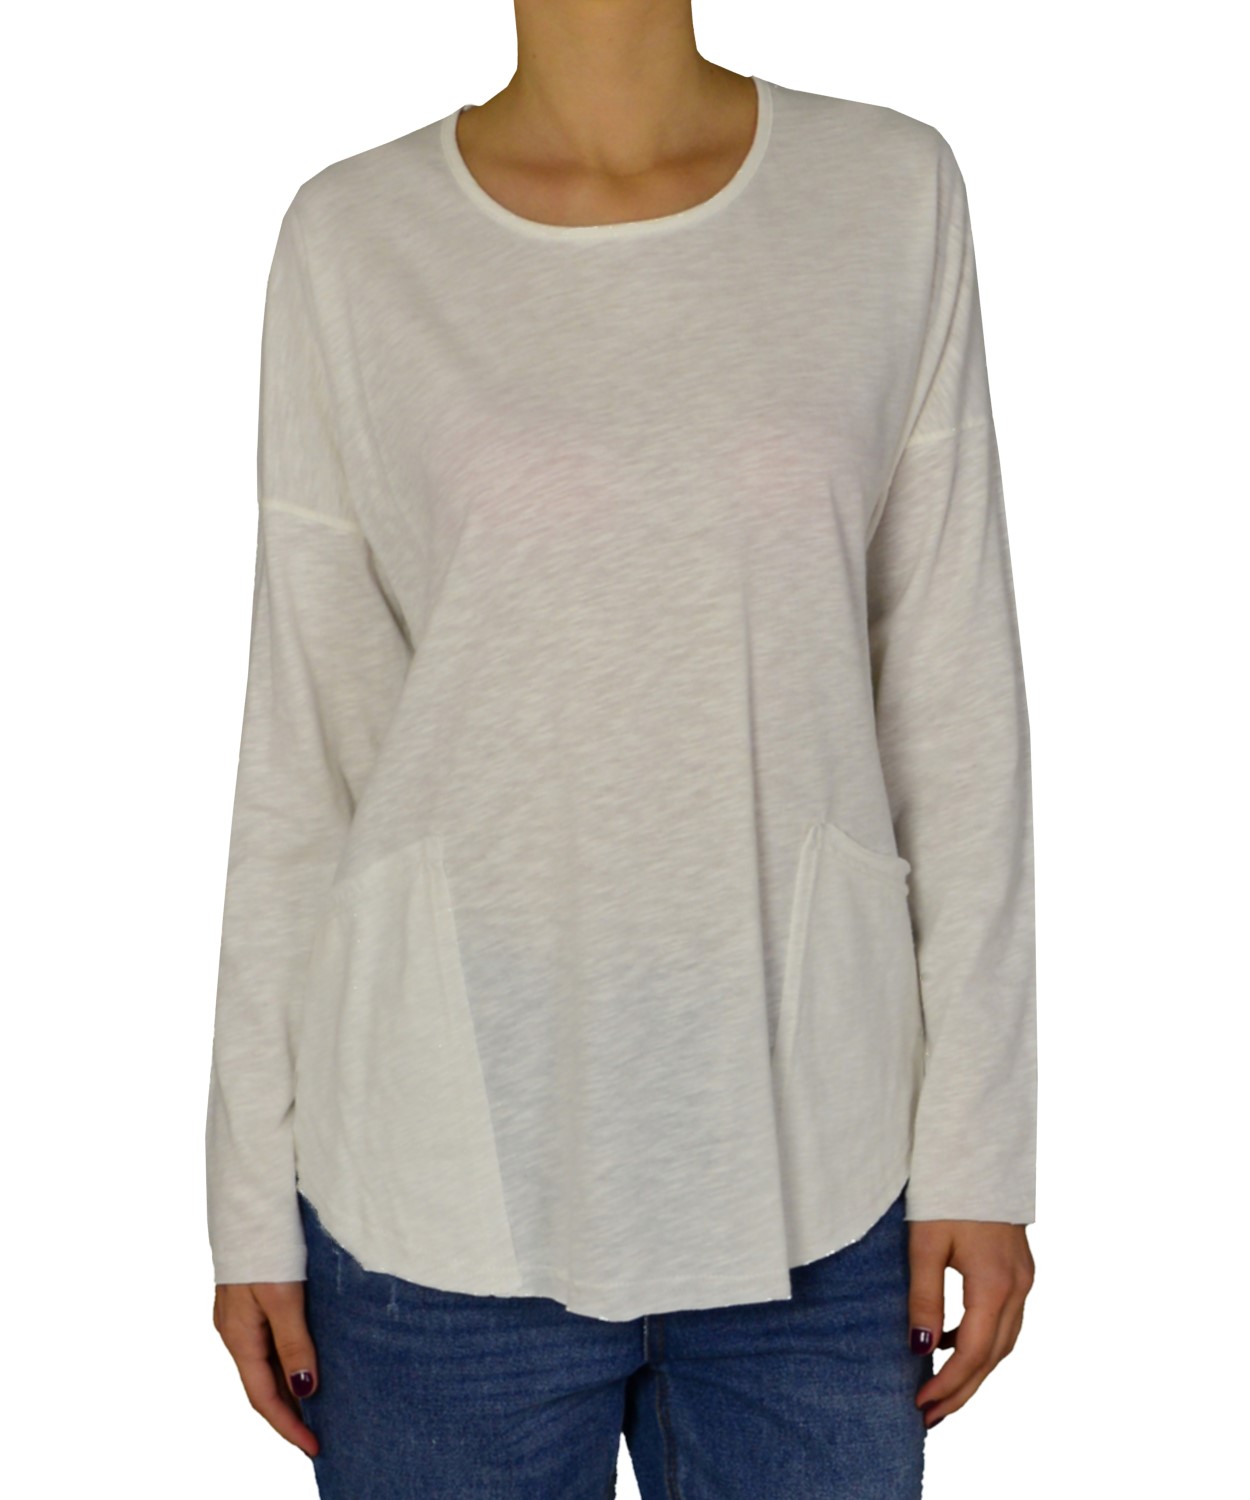 Γυναικεία μακρυμάνικη μπλούζα Lipsy λευκή τσέπες 2170102